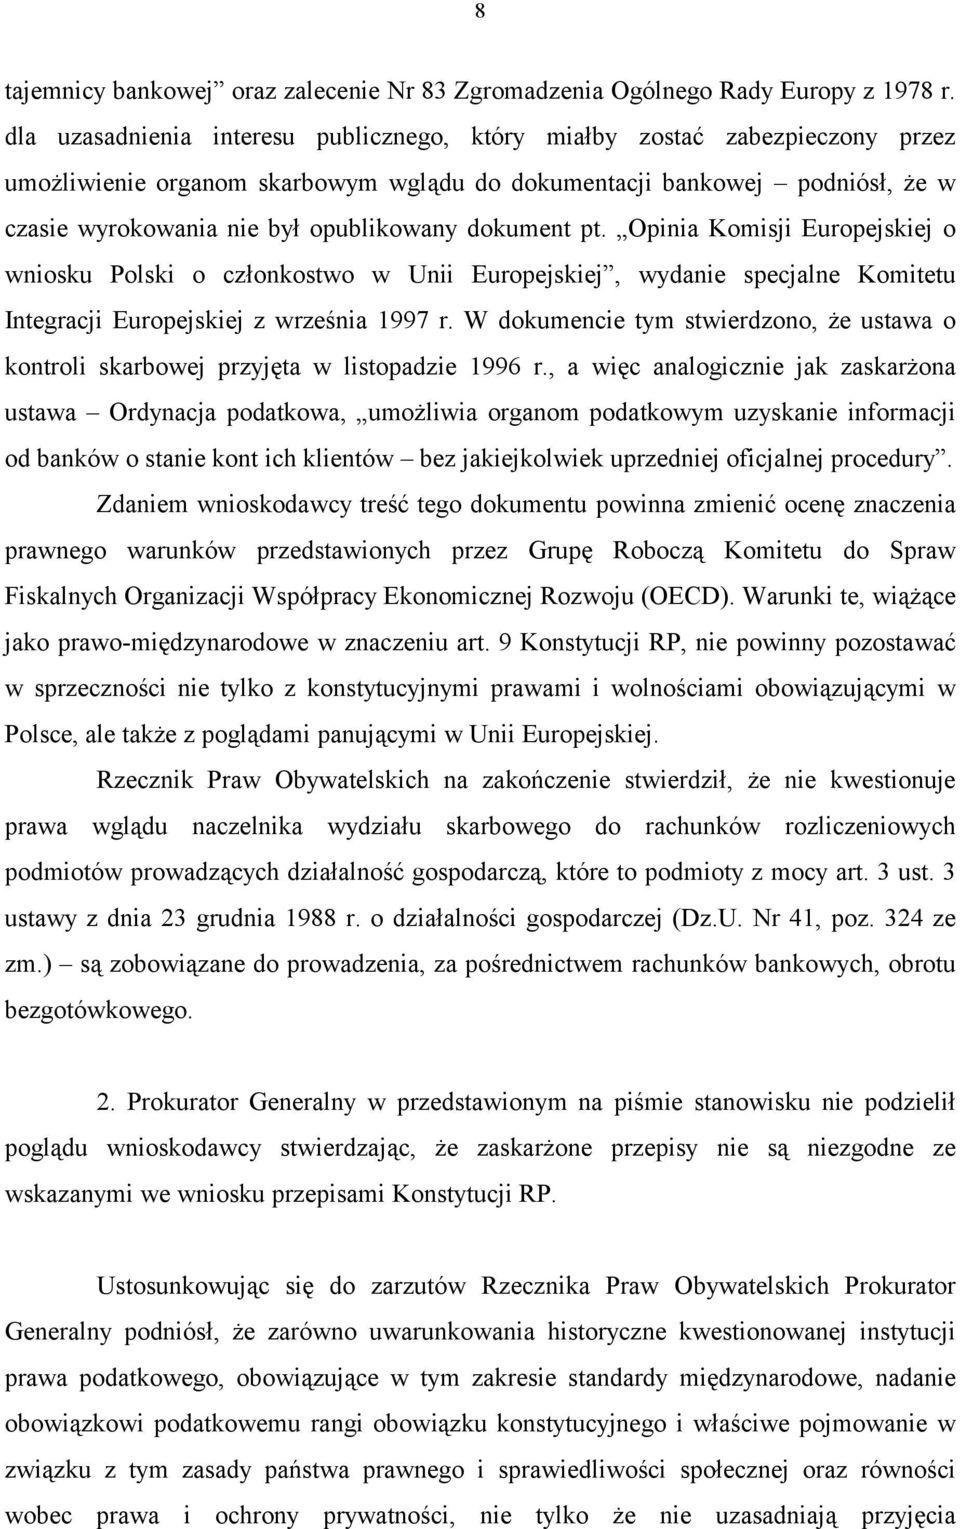 dokument pt. Opinia Komisji Europejskiej o wniosku Polski o członkostwo w Unii Europejskiej, wydanie specjalne Komitetu Integracji Europejskiej z września 1997 r.